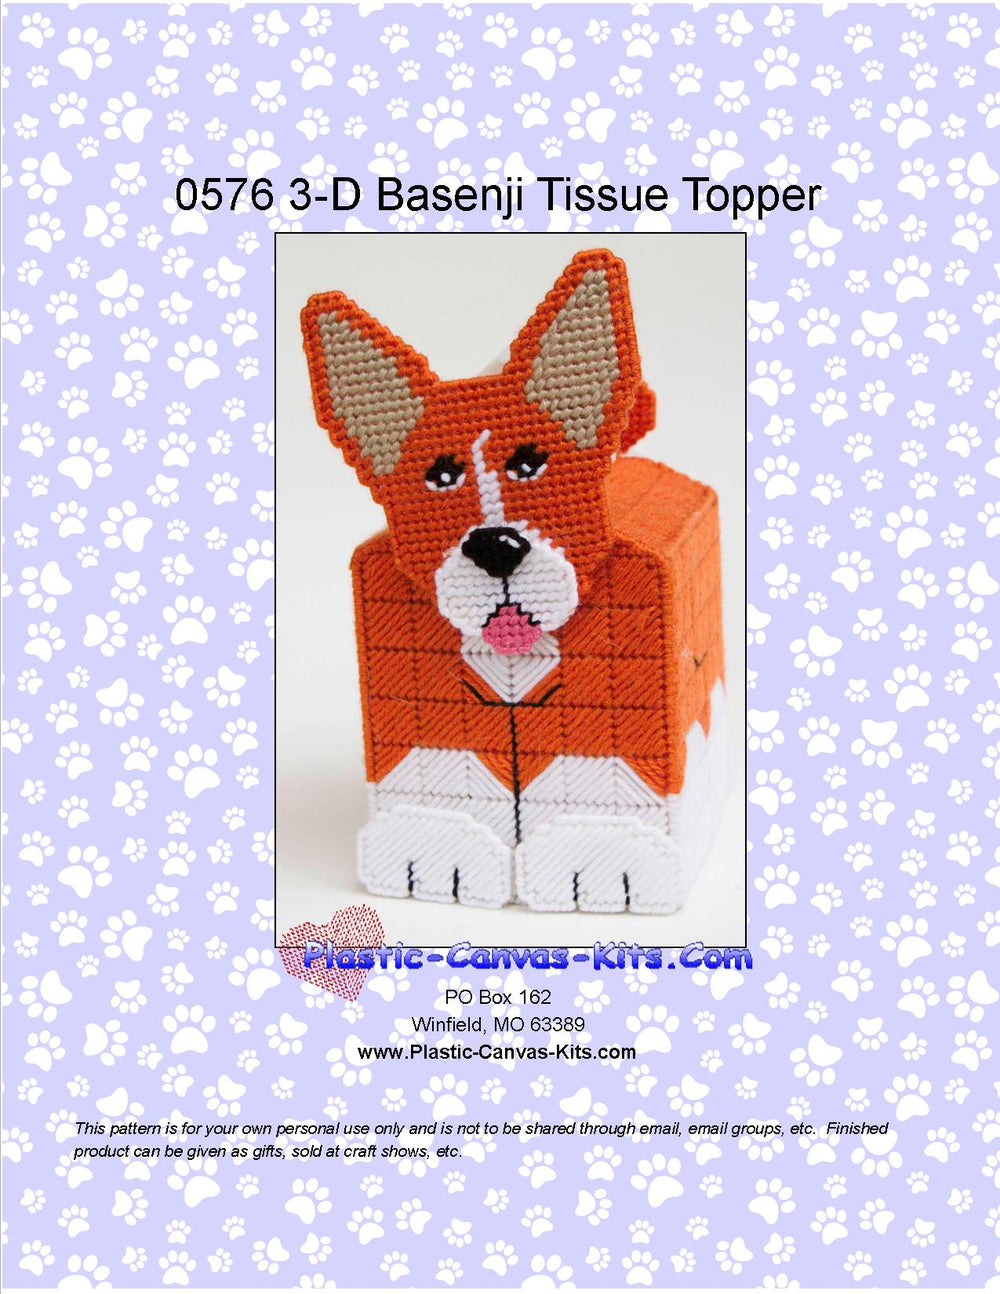 Basenji 3-D Tissue Topper